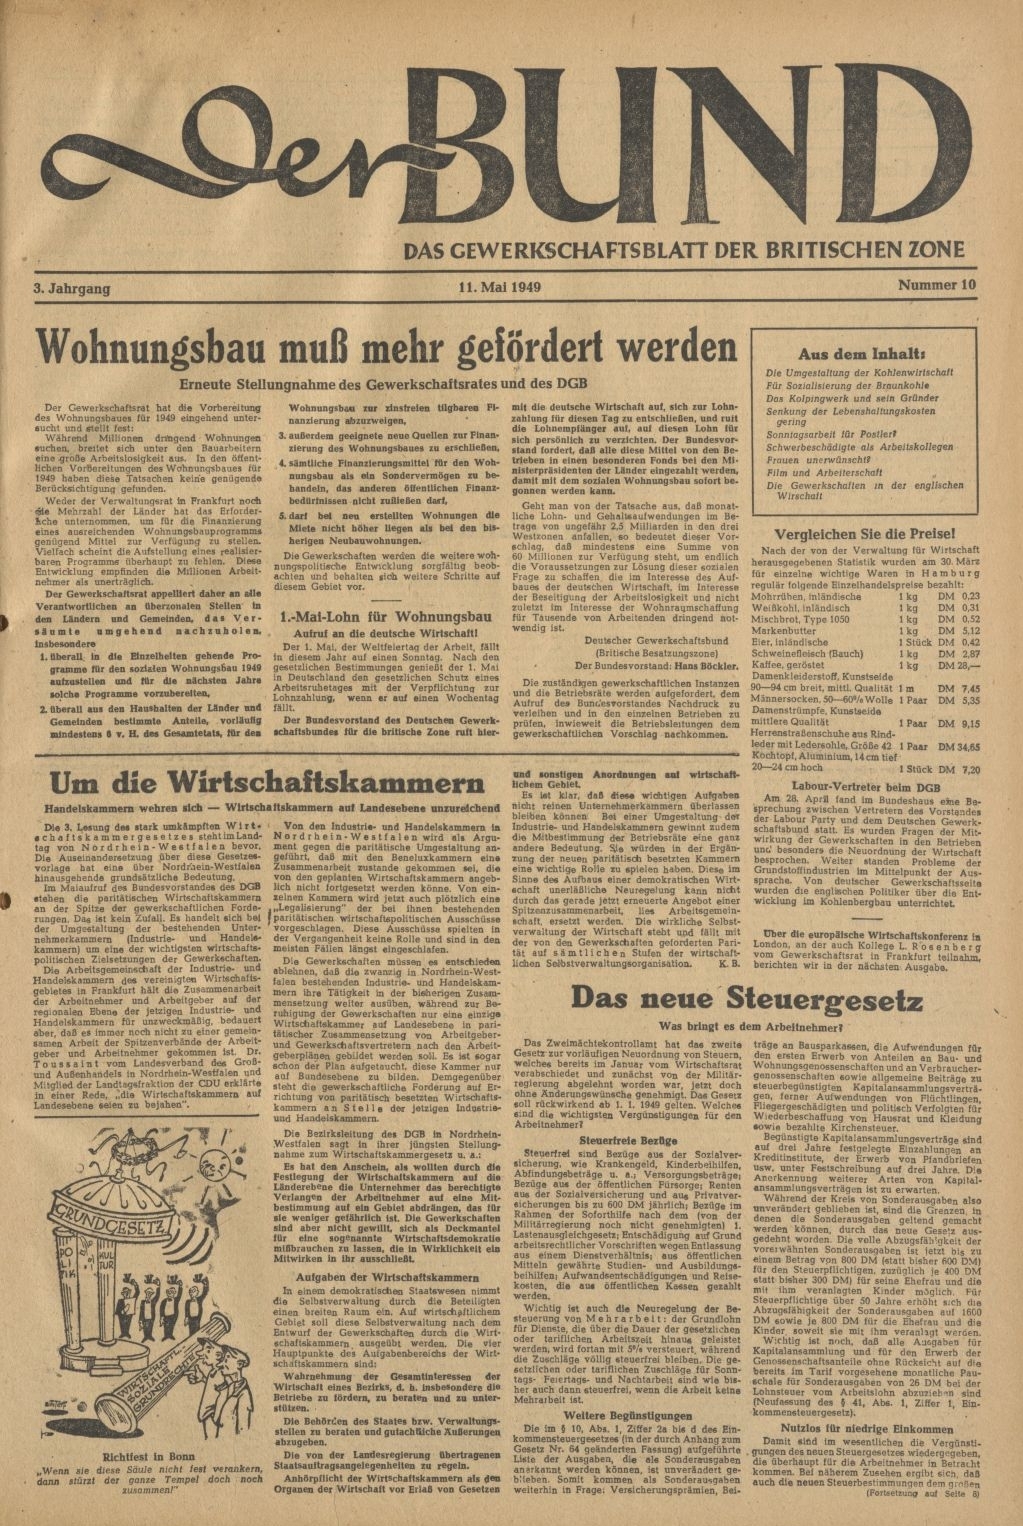 Titelseite von "Der Bund - Das Gewerkschaftsblatt der britischen Zone" vom 11. Mai 1949 (Quelle: Bibliothek im AdsD) 